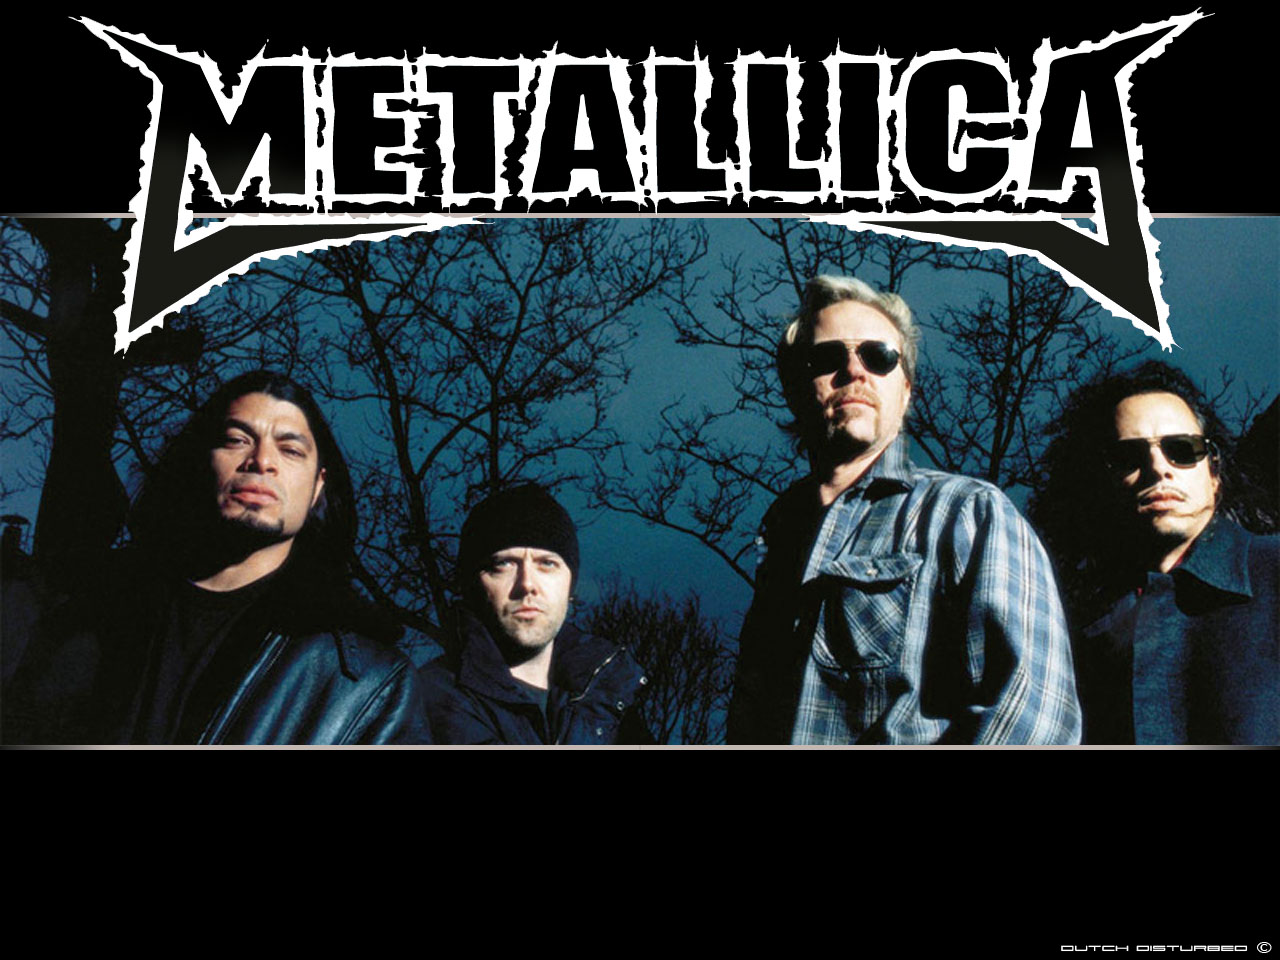 http://2.bp.blogspot.com/-LLExlJLd1_w/TVqgQJigTxI/AAAAAAAAACc/izQF97_IWmI/s1600/Metallica_2v2.jpg